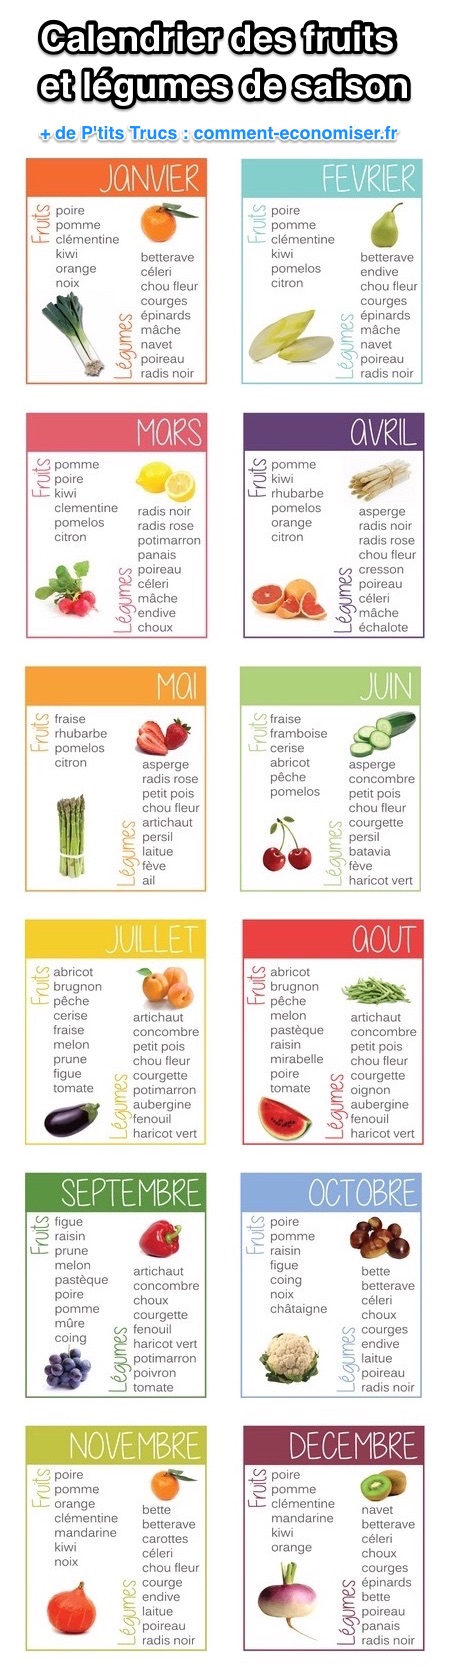 El calendario de frutas y verduras de temporada mes a mes.